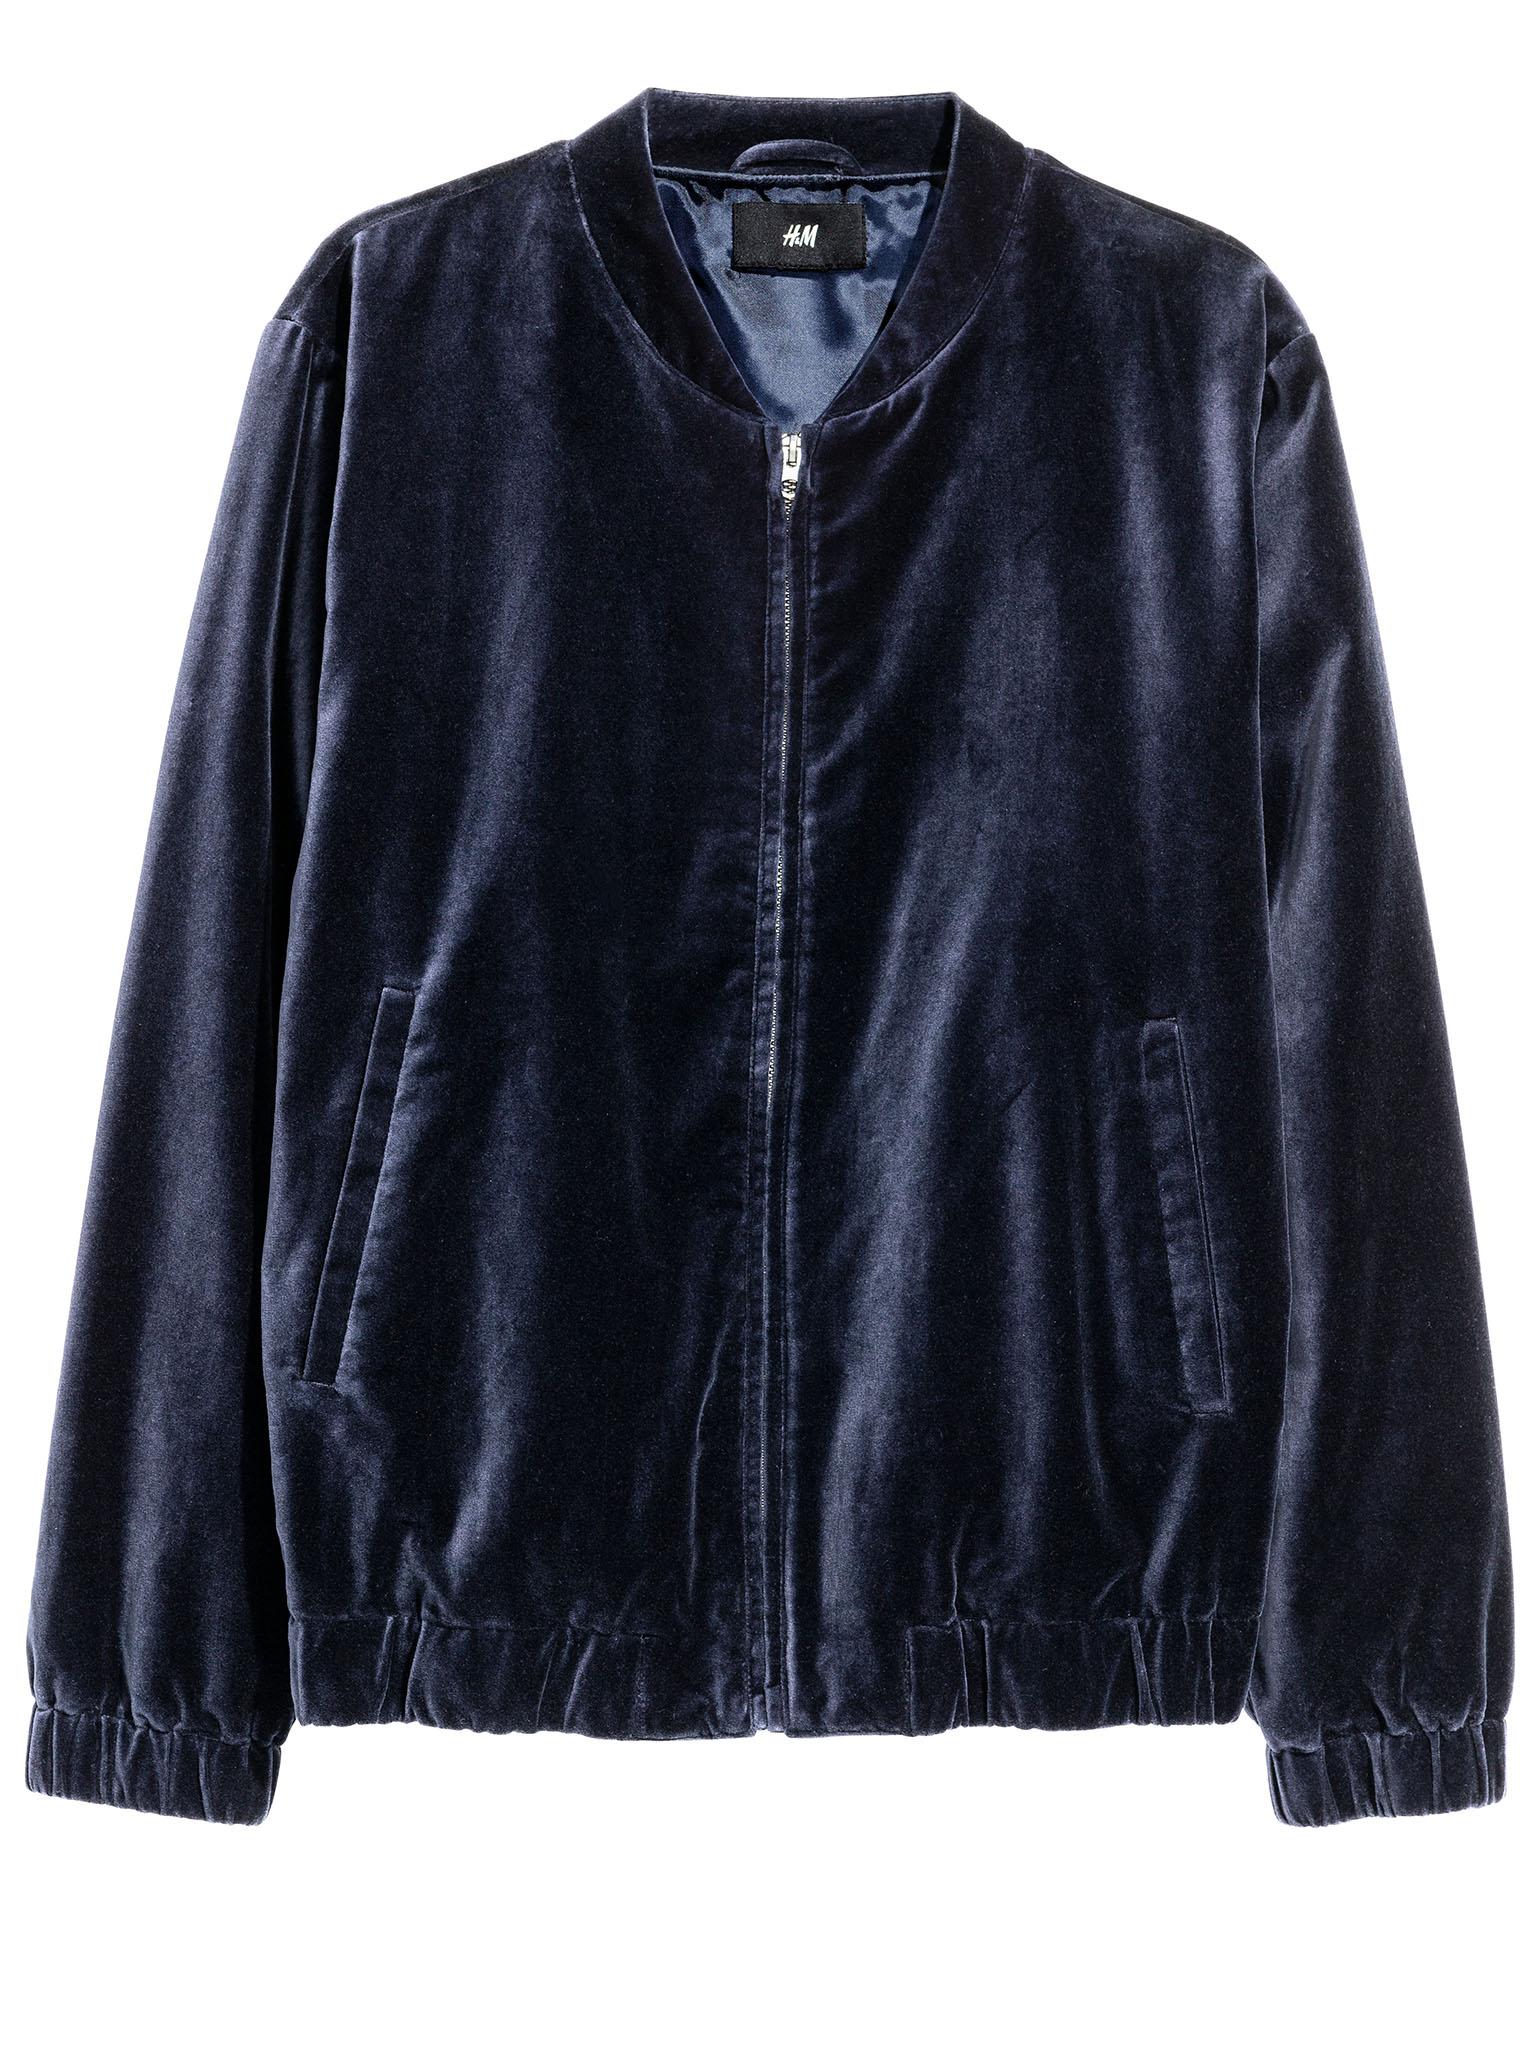 H&amp;M cotton velvet bomber jacket, £29.99, hm.com